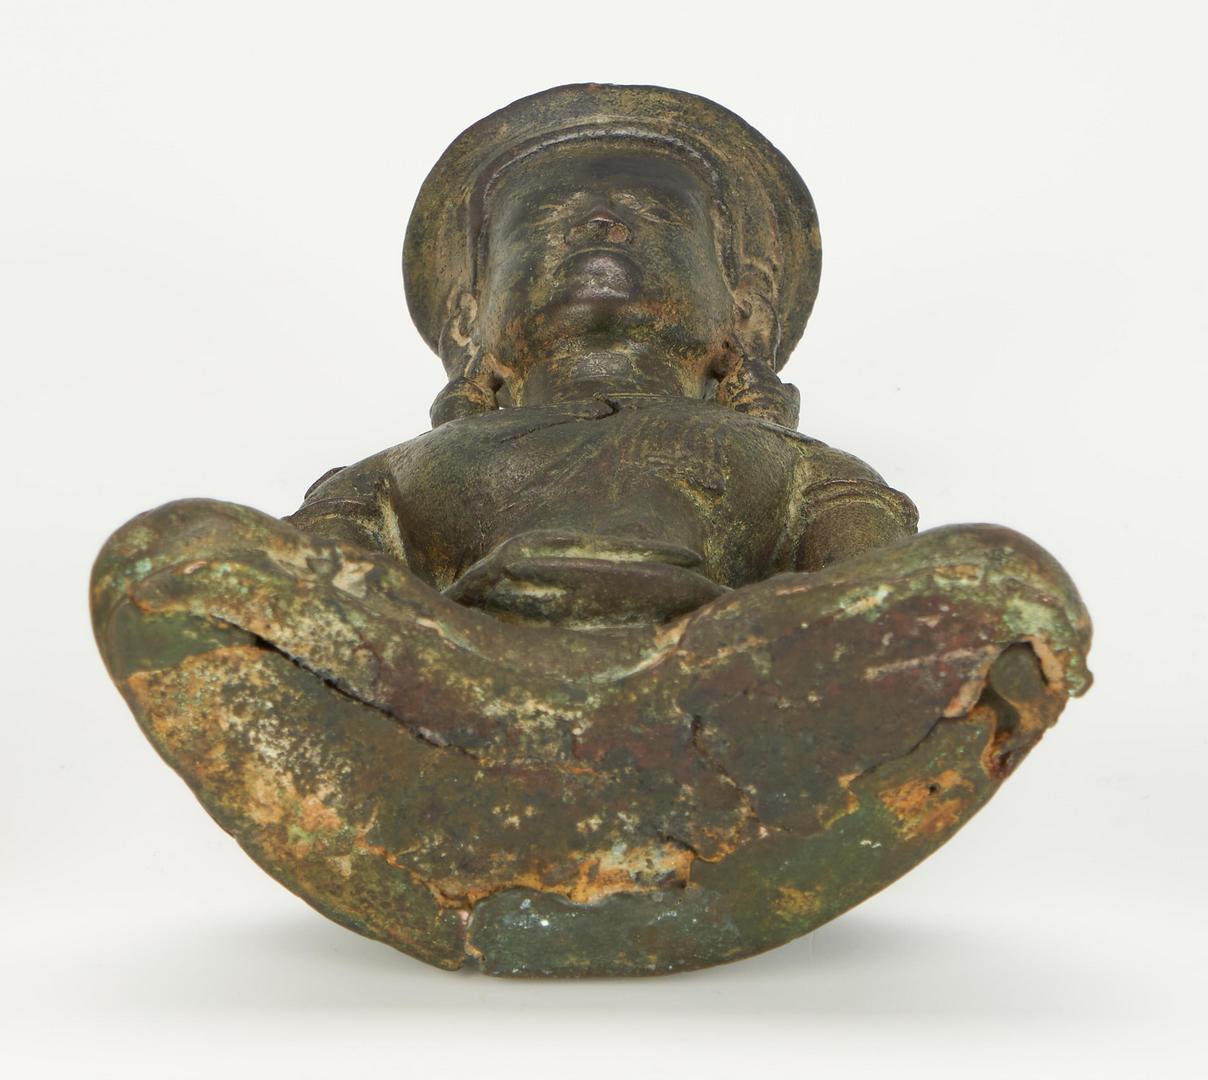 Lot 23: 8 Asian Items, incl. Jade Censer, Bronze Buddha